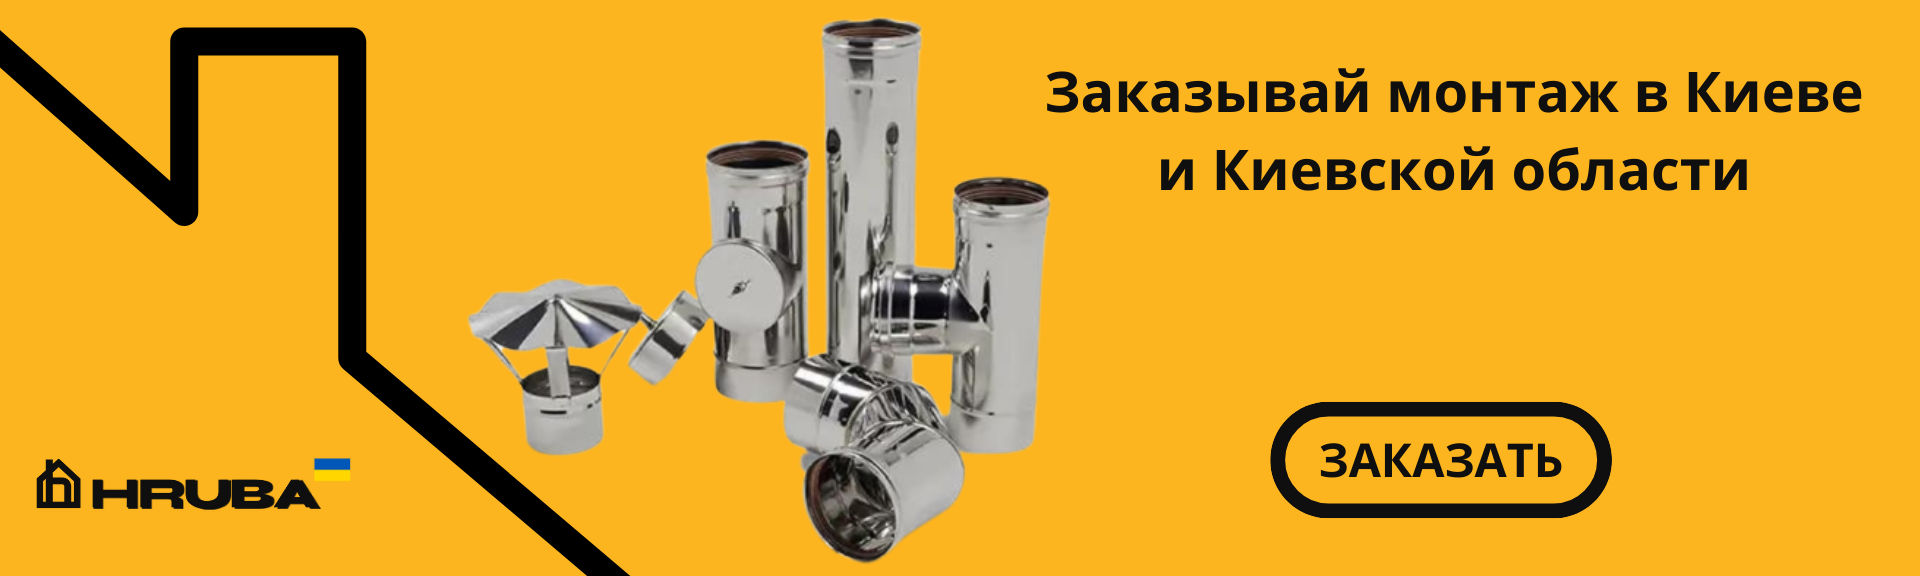 Монтаж дымоходов любой сложности в Киеве и Киевской области от 5000грн (073) 35 35 487 | HRUBA